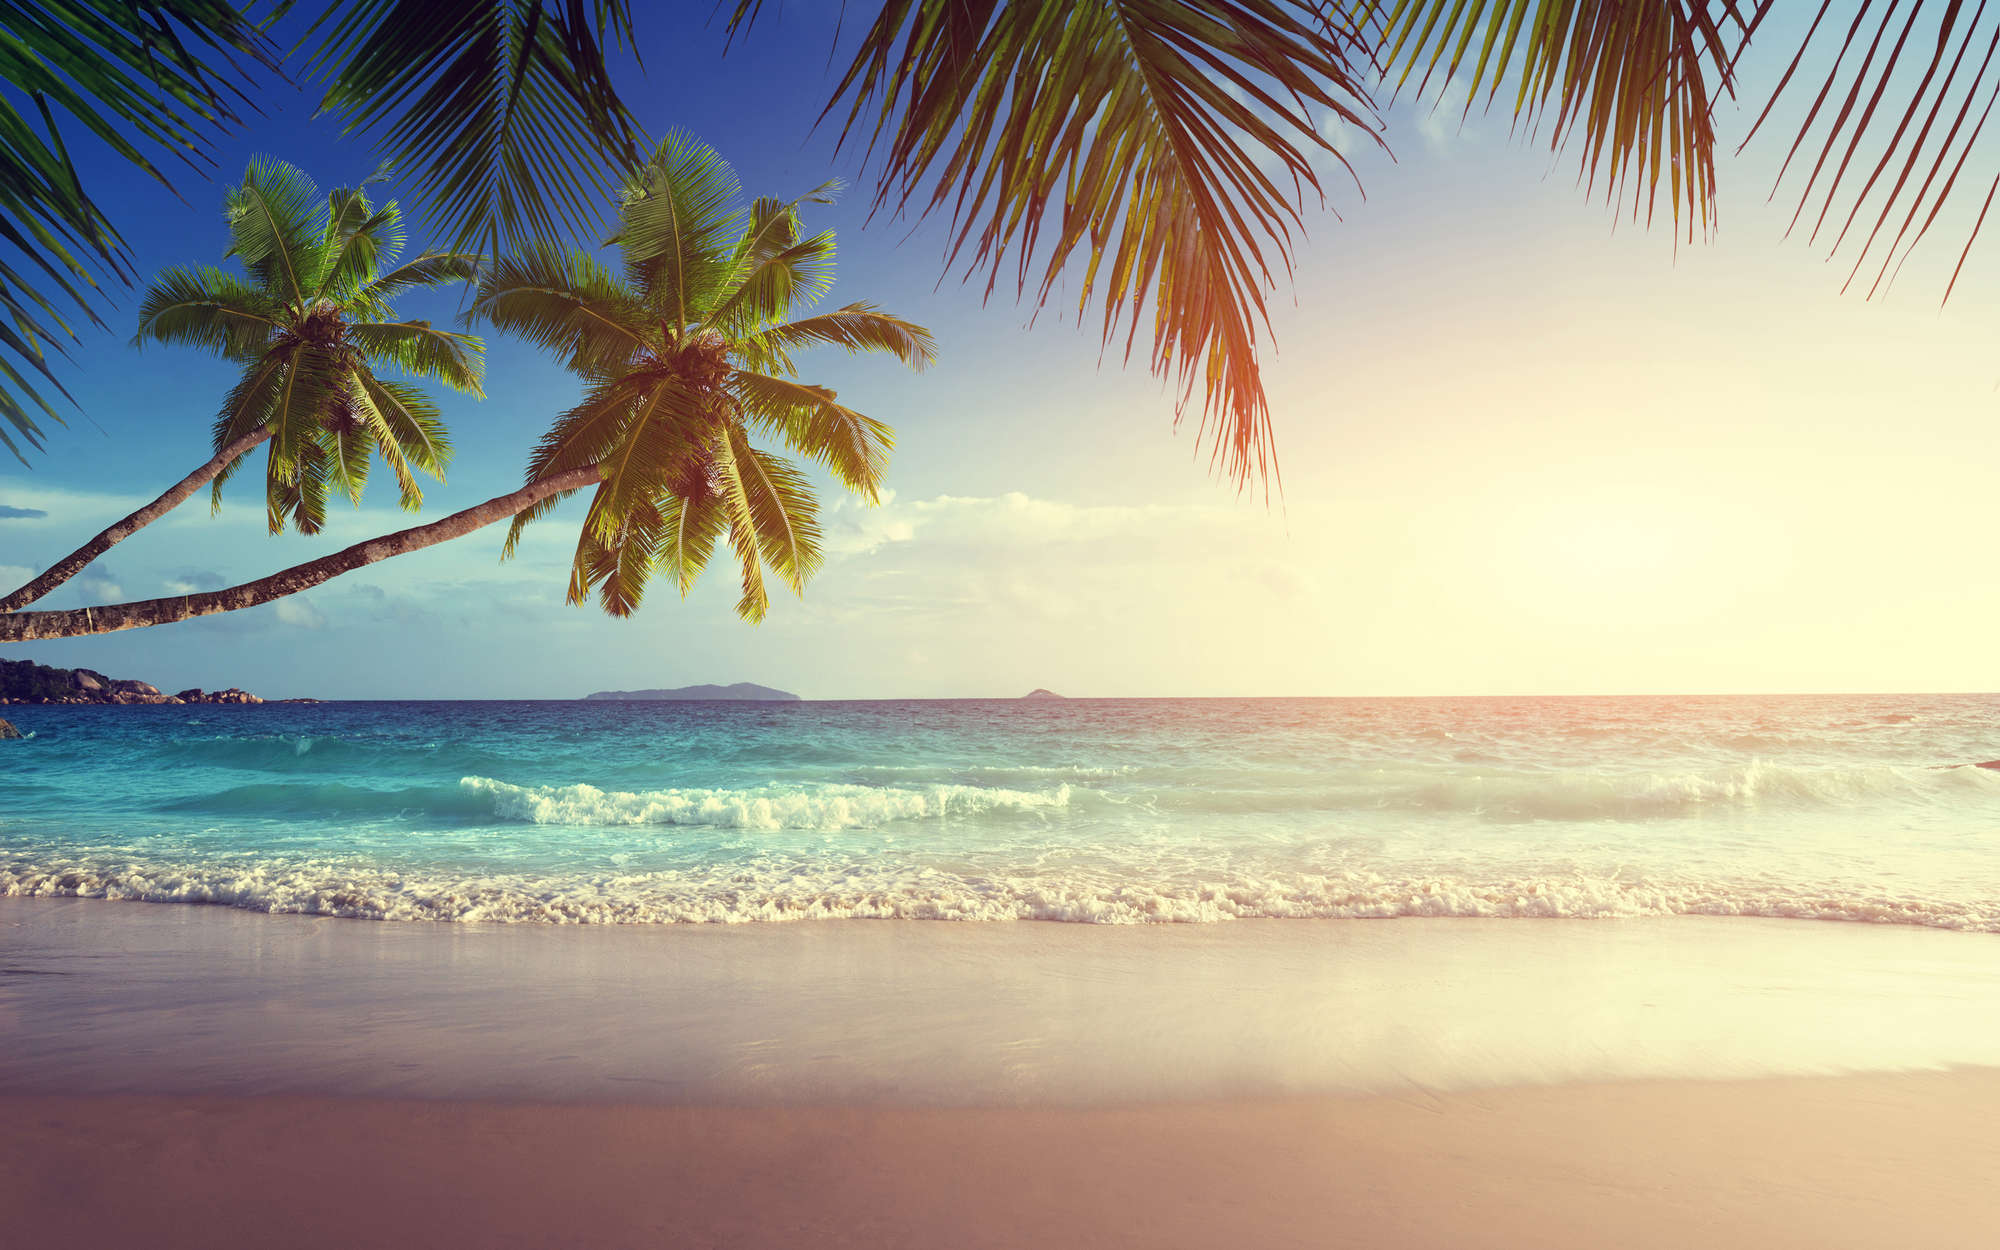             Digital behang Seychellen met palmbomen - Premium glad vlies
        